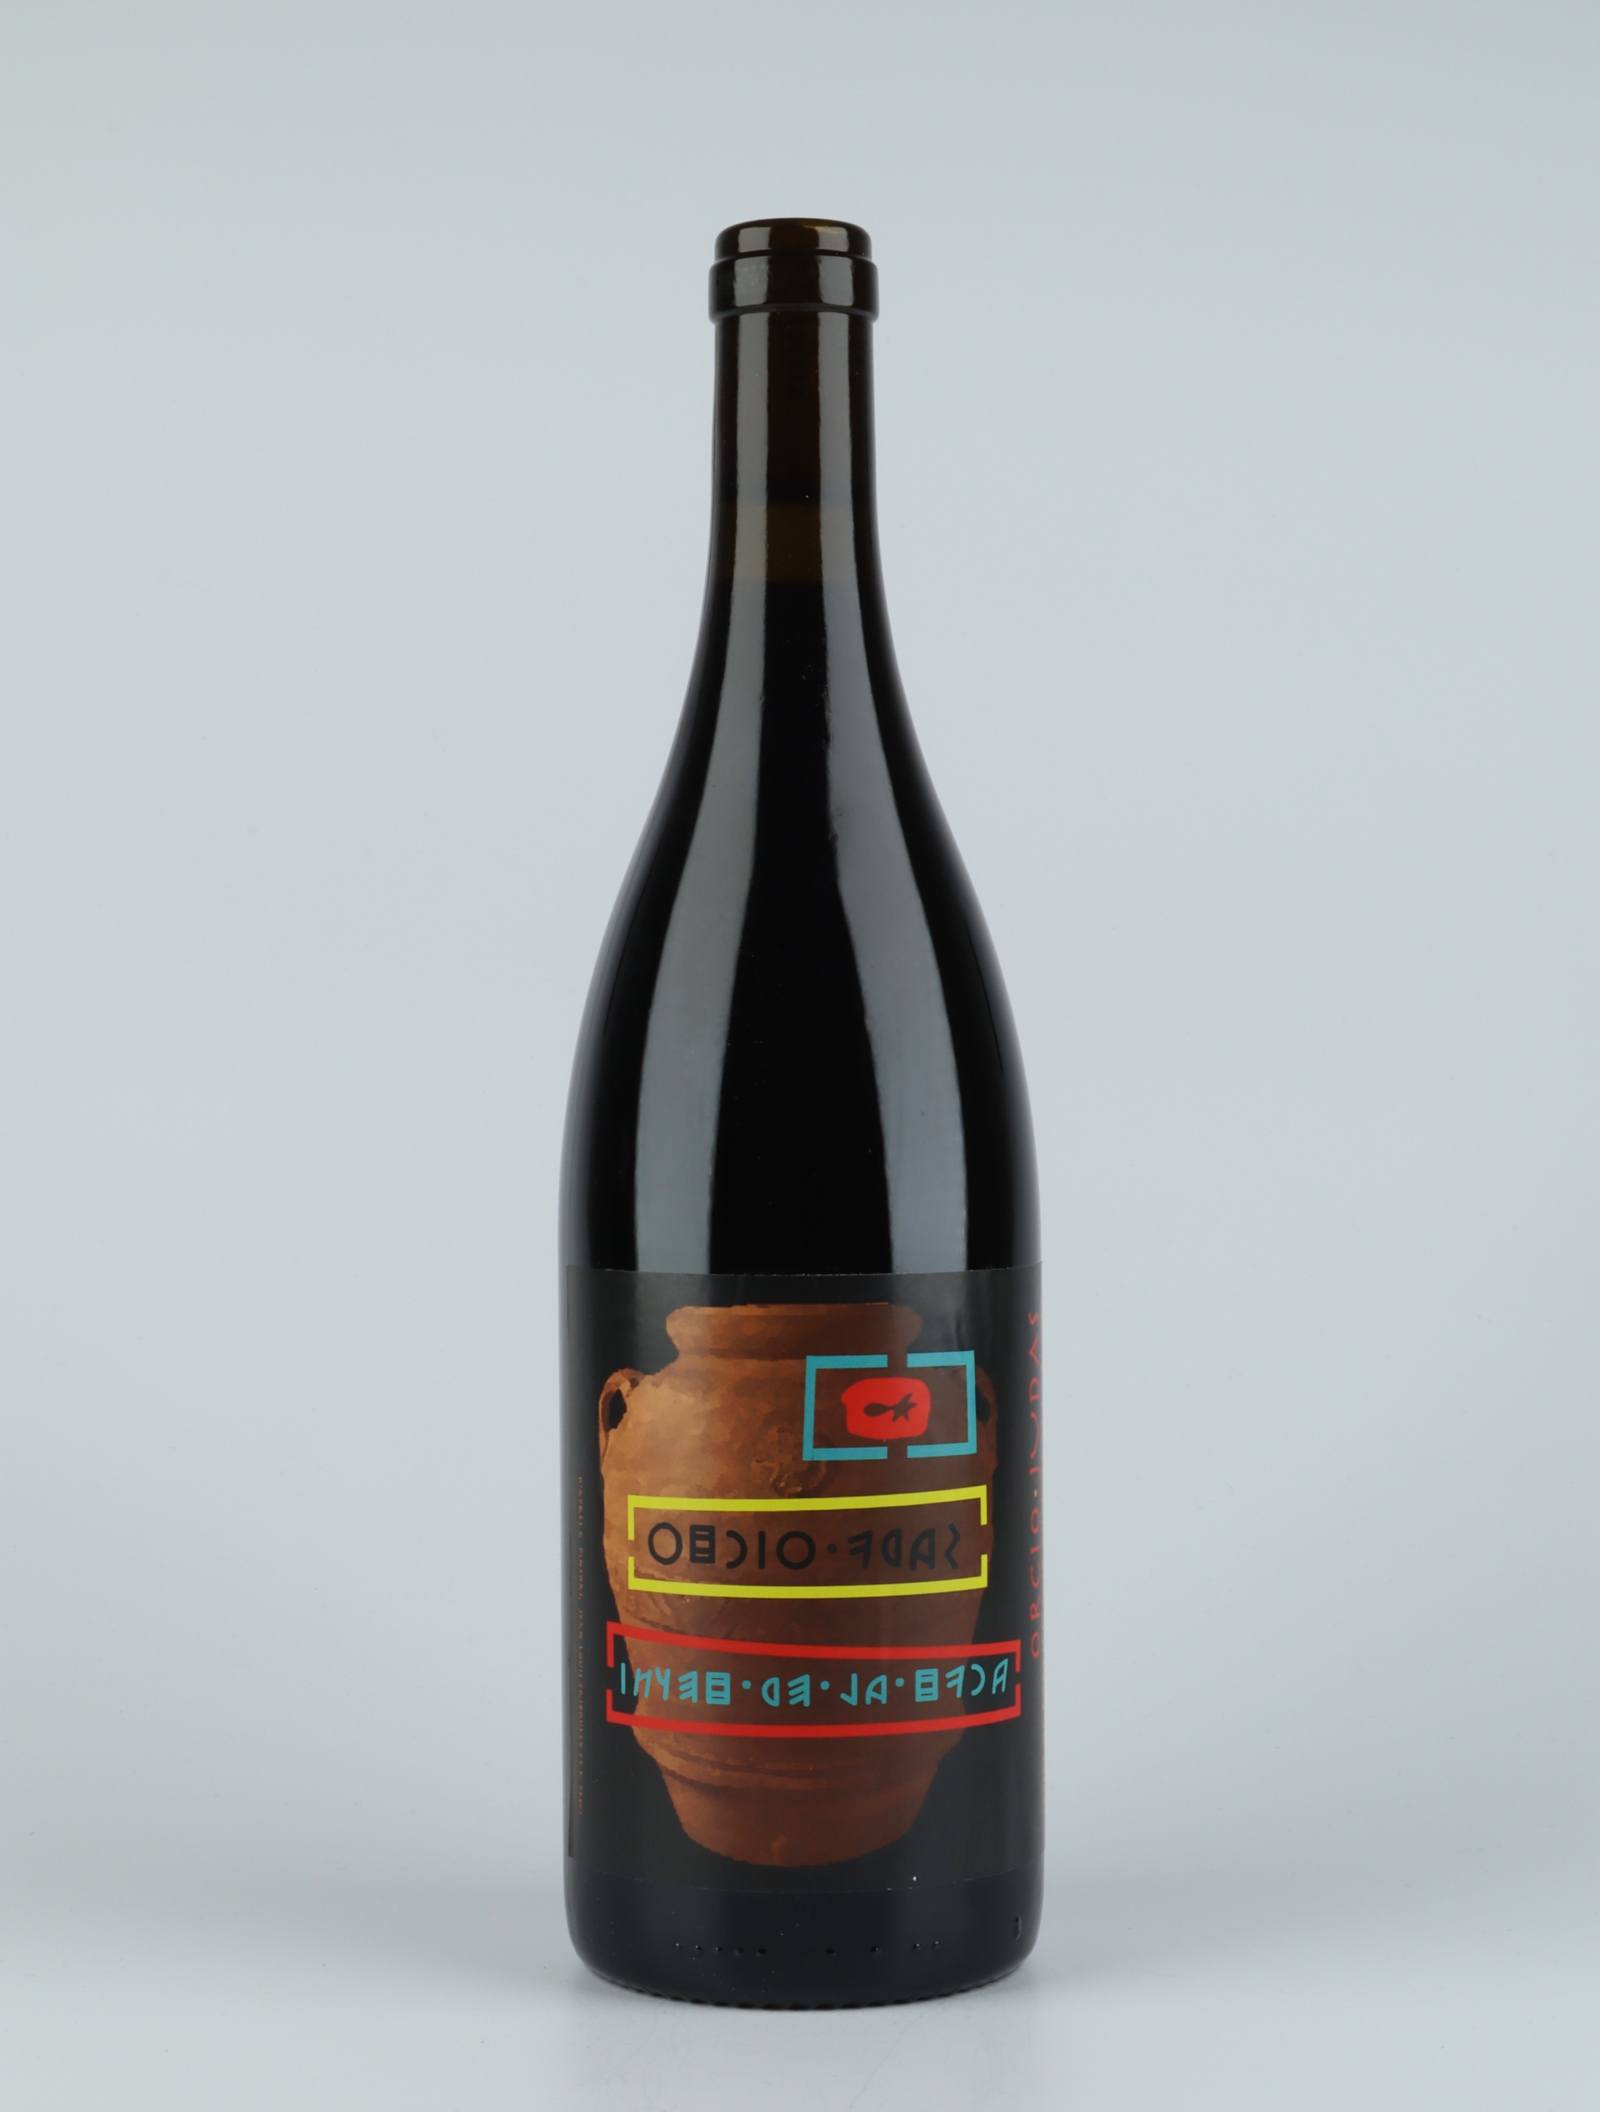 En flaske 2018 Orcio Judas Rødvin fra Vinyer de la Ruca, Rousillon i Frankrig